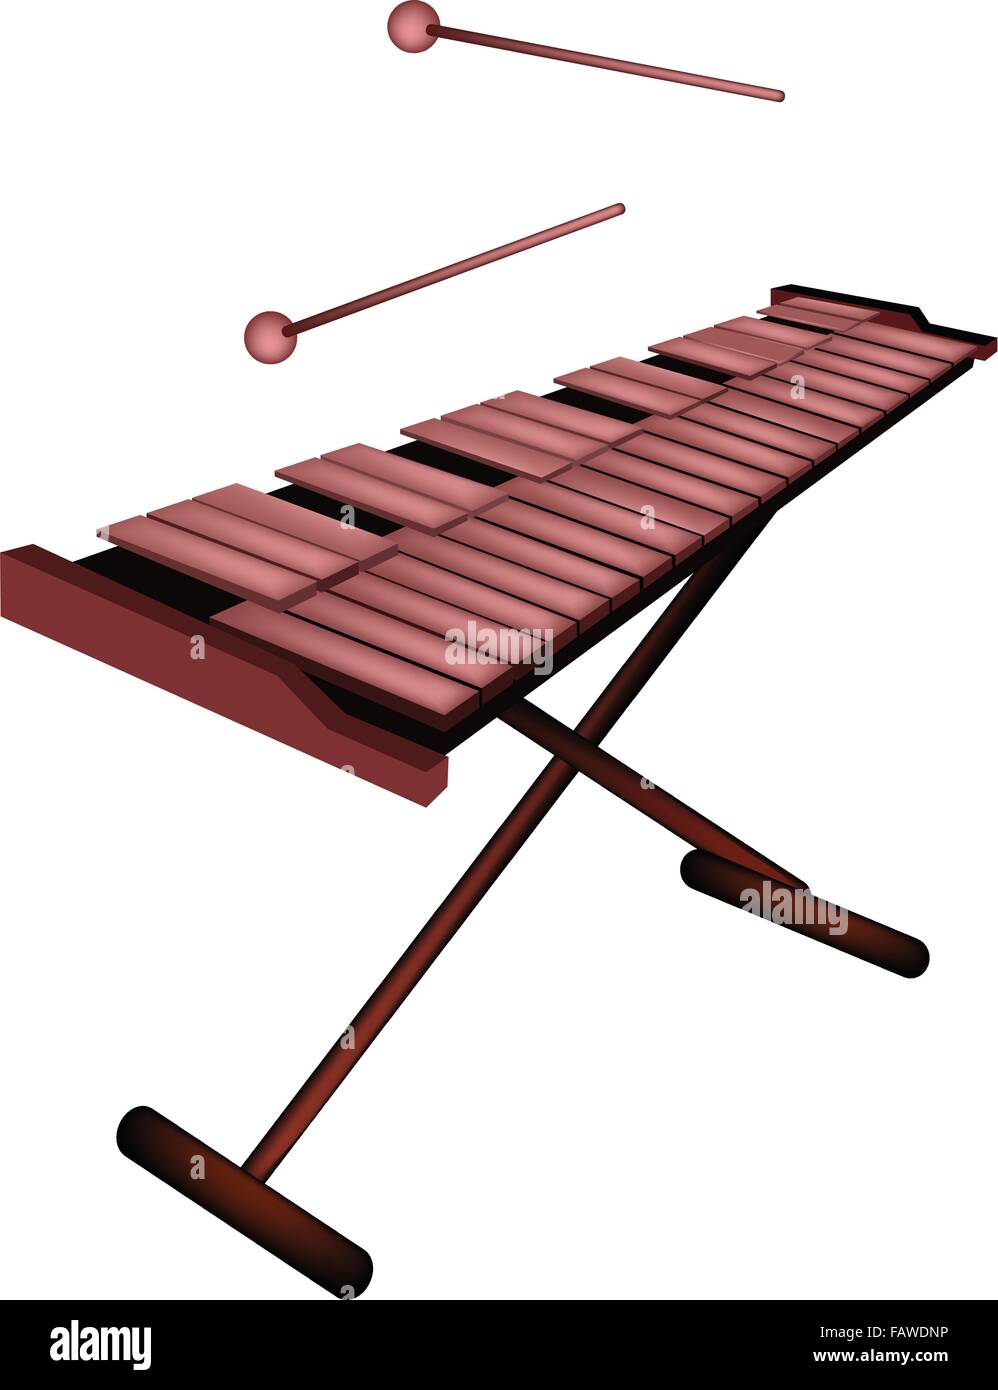 Strumento musicale, un'illustrazione di xilofono, vibrafono o Marimba su  supporto e due isolati del battitore su sfondo bianco Immagine e Vettoriale  - Alamy